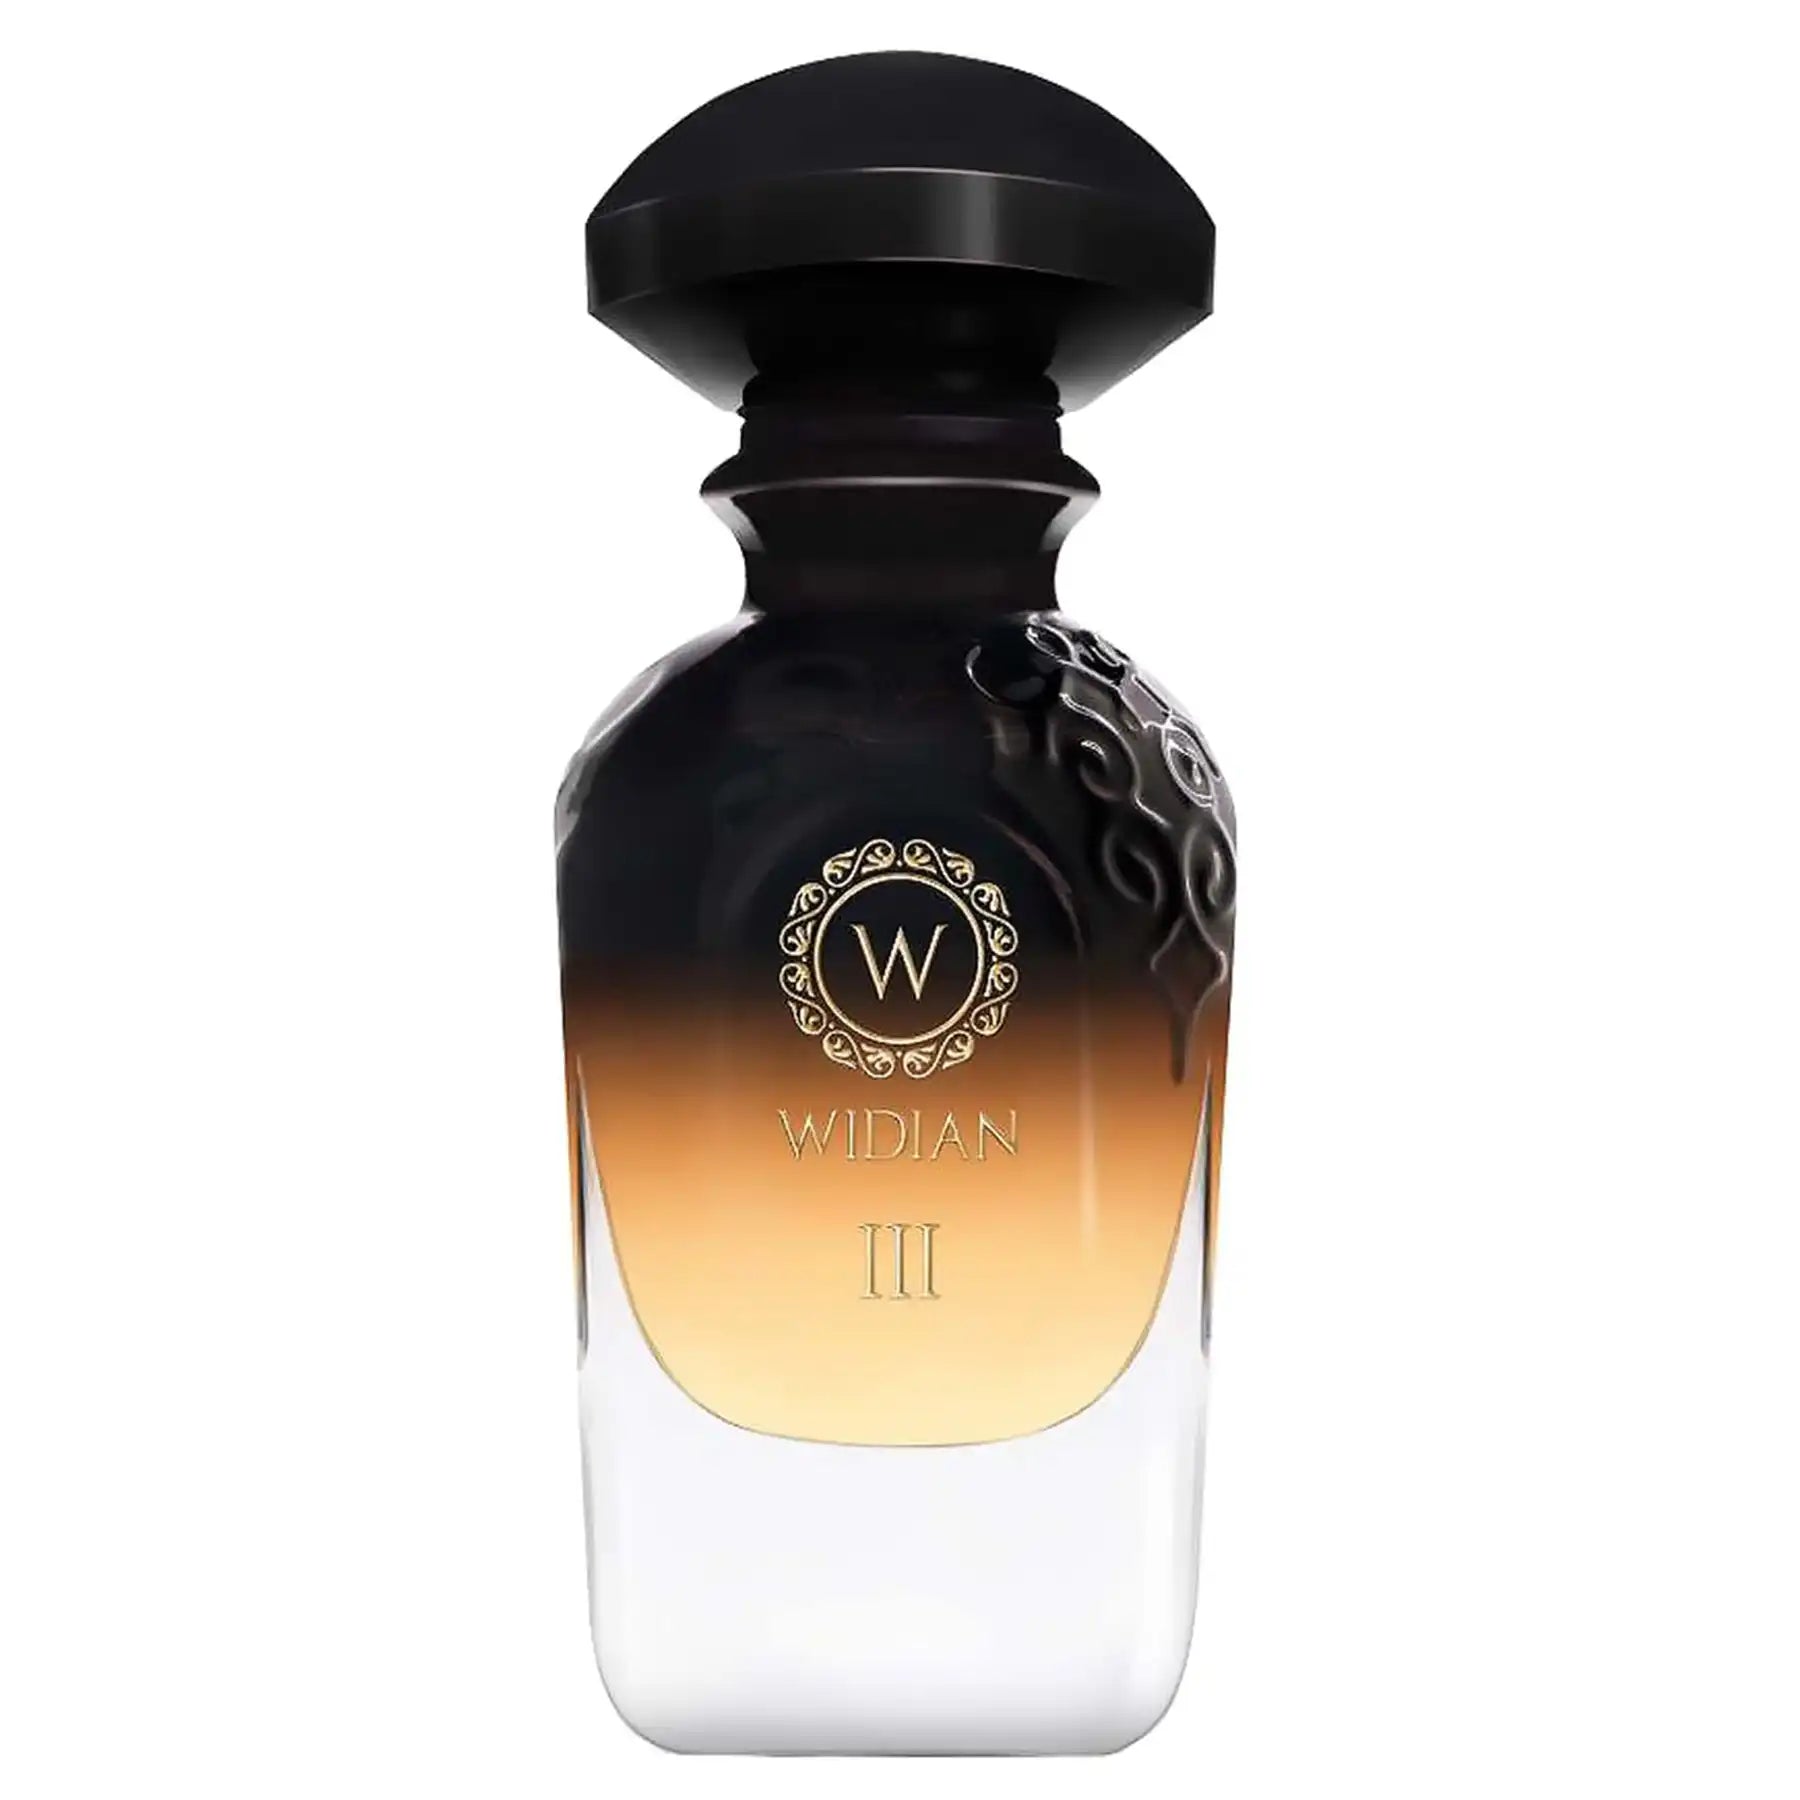 Widian Black III Extrait de Parfum 50ml